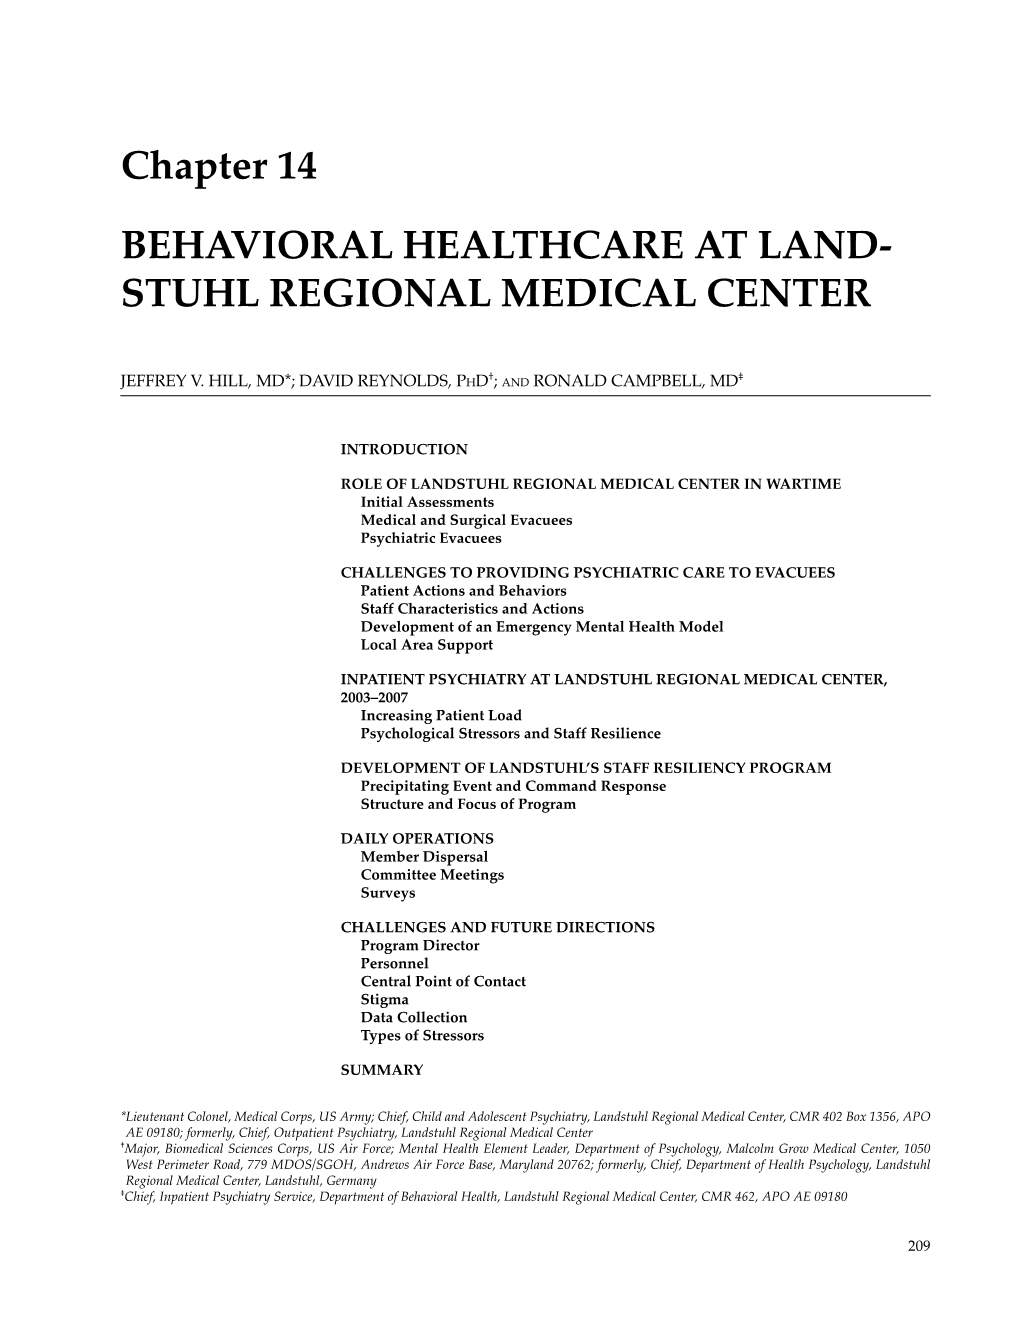 Chapter 14 Behavioral Healthcare at Land- Stuhl Regional Medical Center